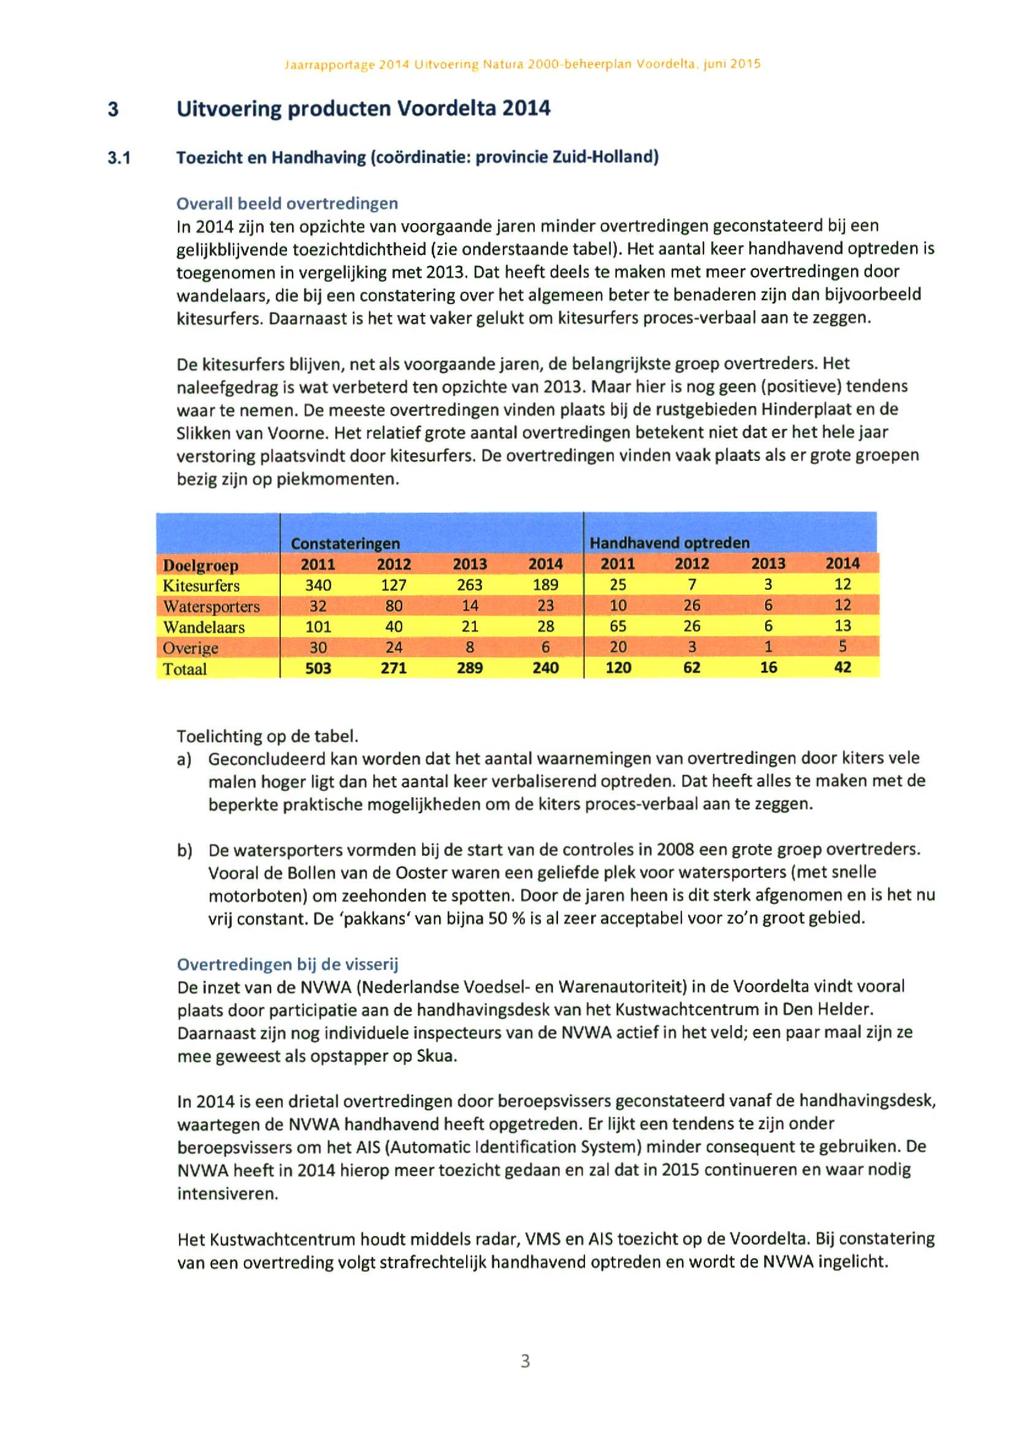 LI tvüetmp NdUita 2000-beheerplan Voordelta, juni 2015 3 Uitvoering producten Voordelta 2014 3.